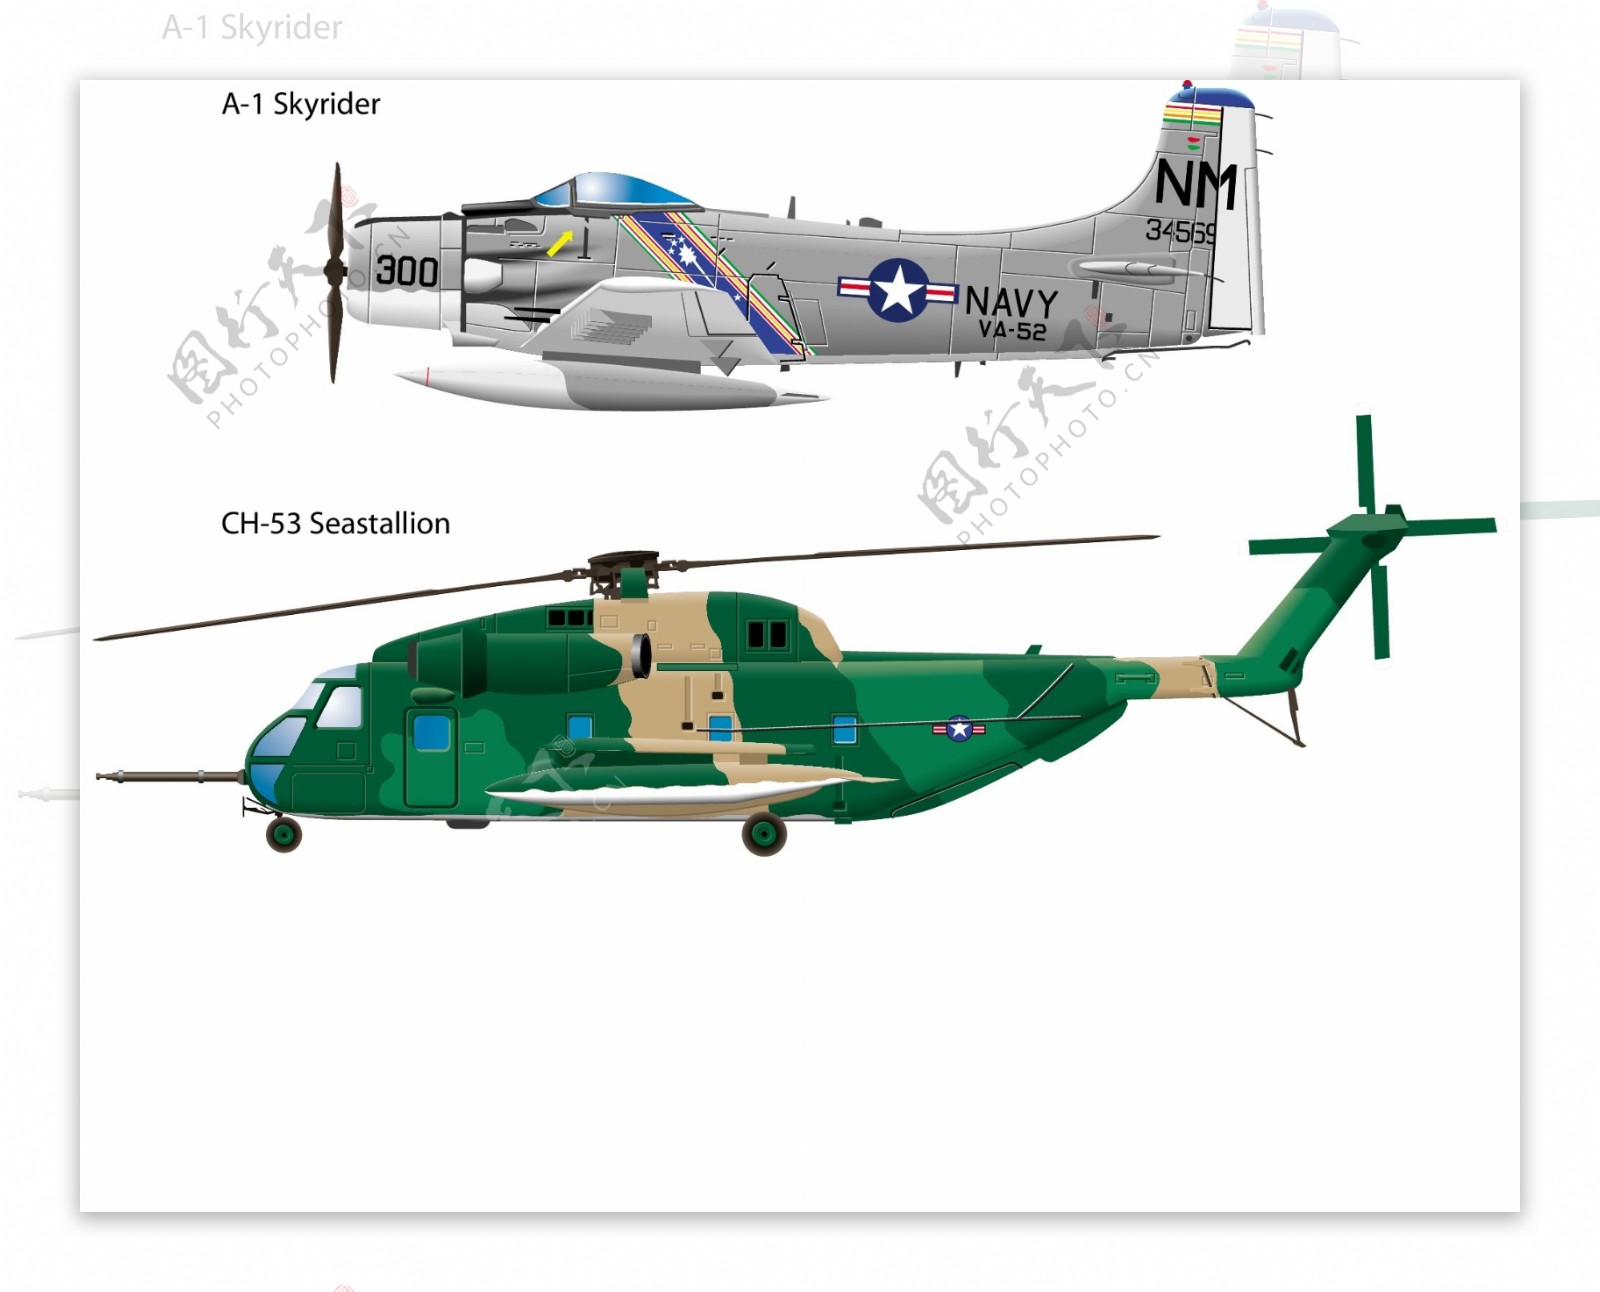 2架军用直升机的写实风格矢量素材